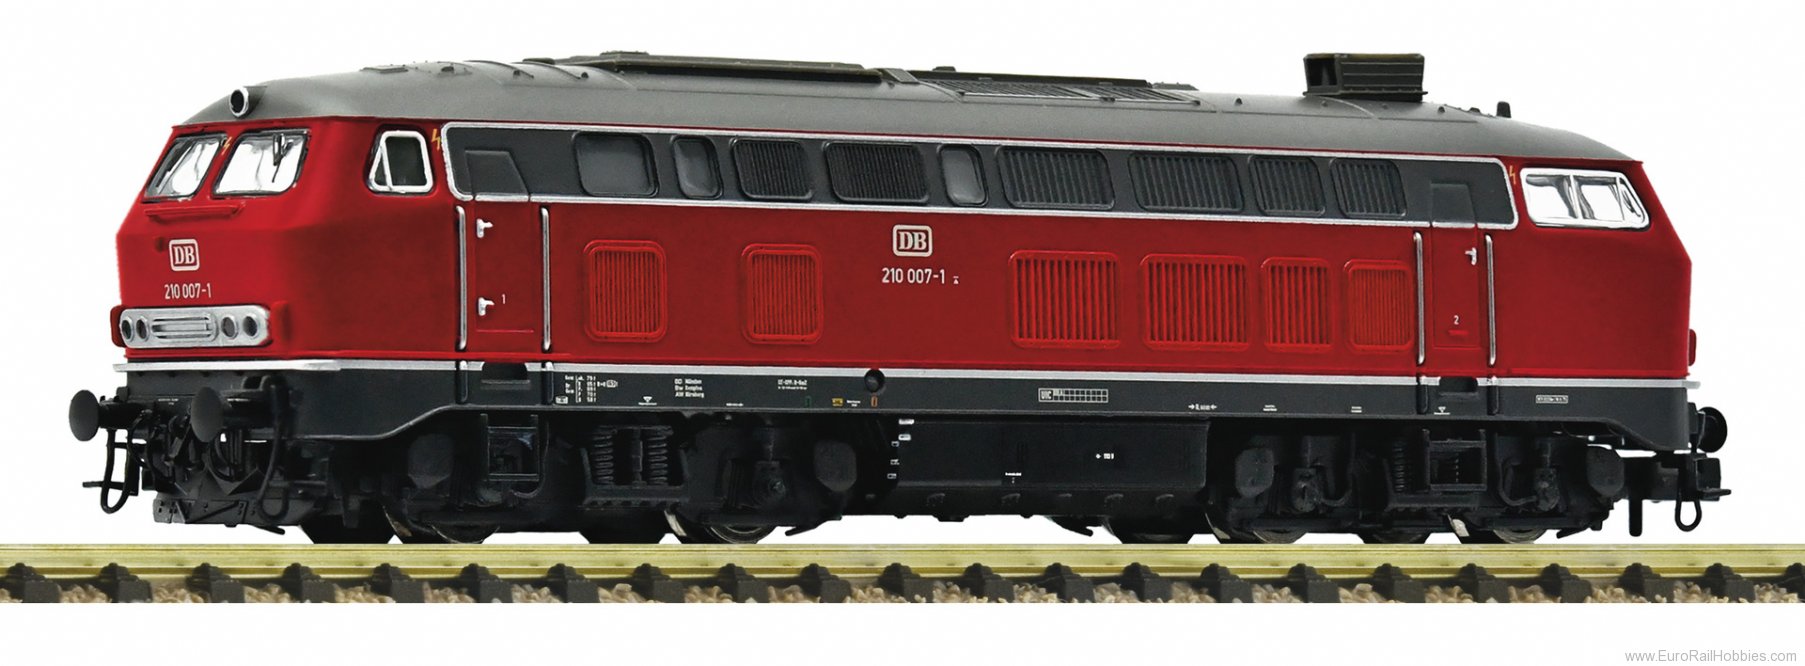 Fleischmann 7370008 DB Diesel locomotive 210 007-1 DCC w/Sound